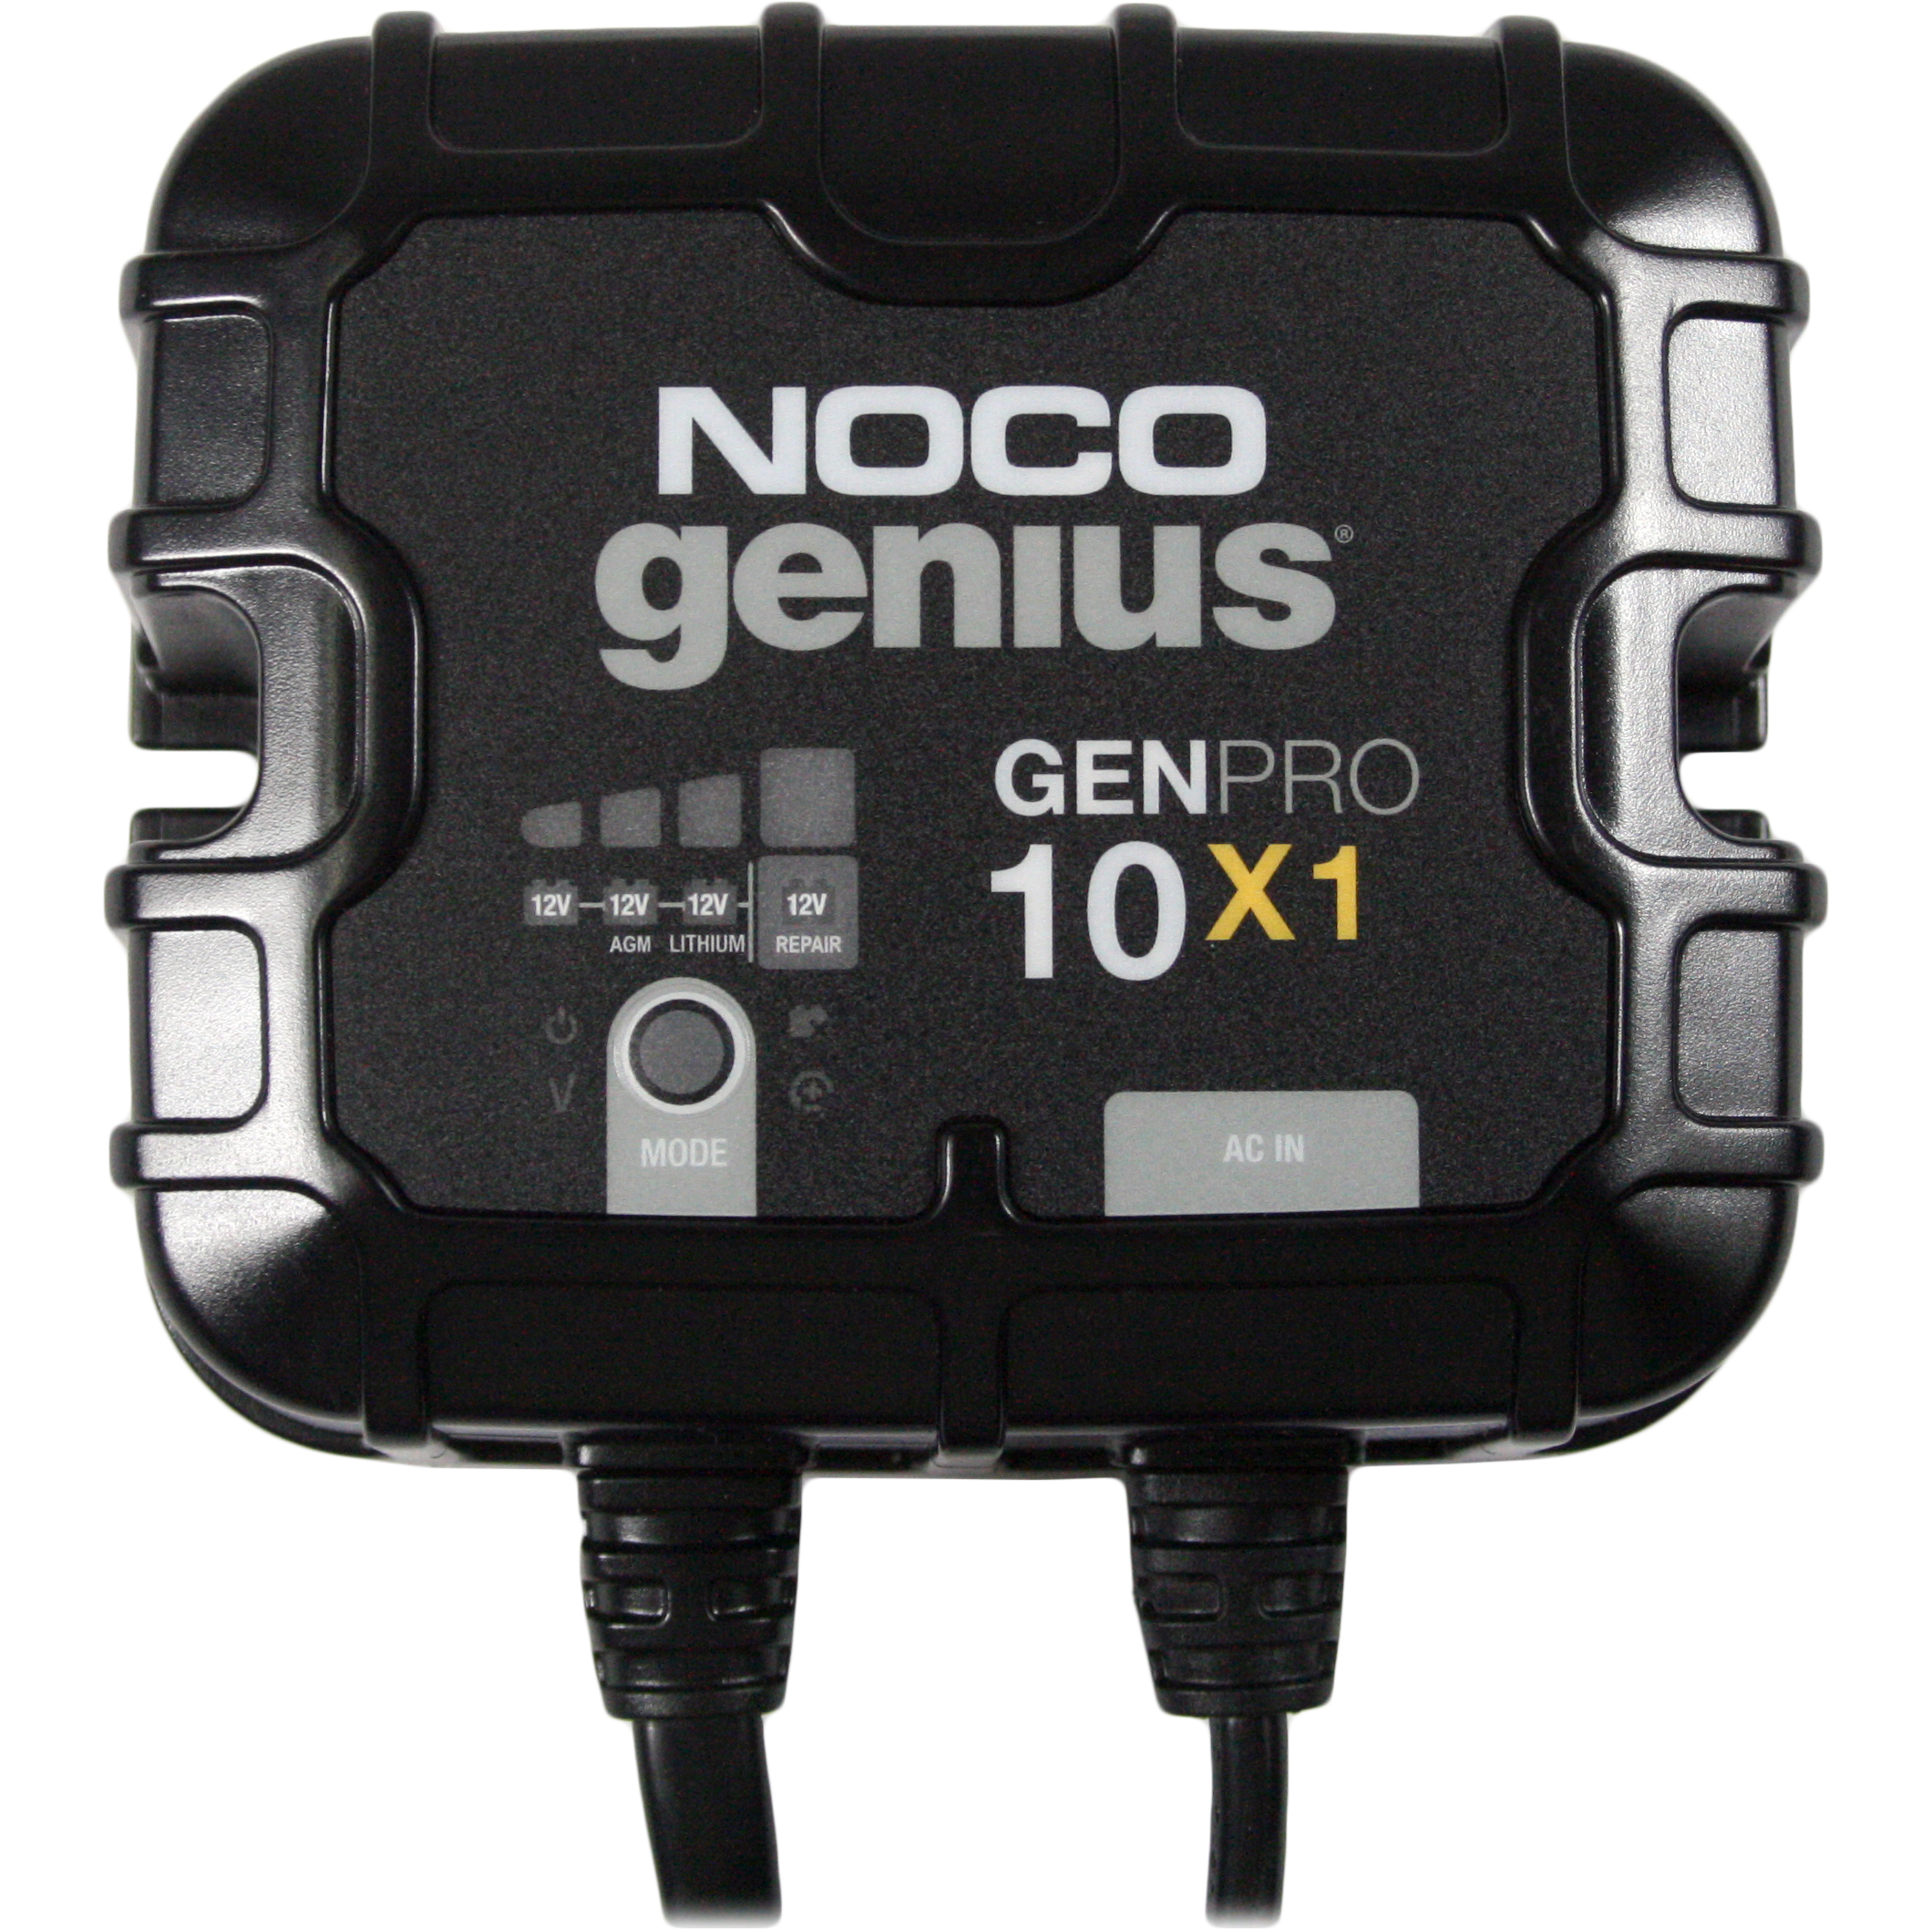 Noco genius 10 repair mode